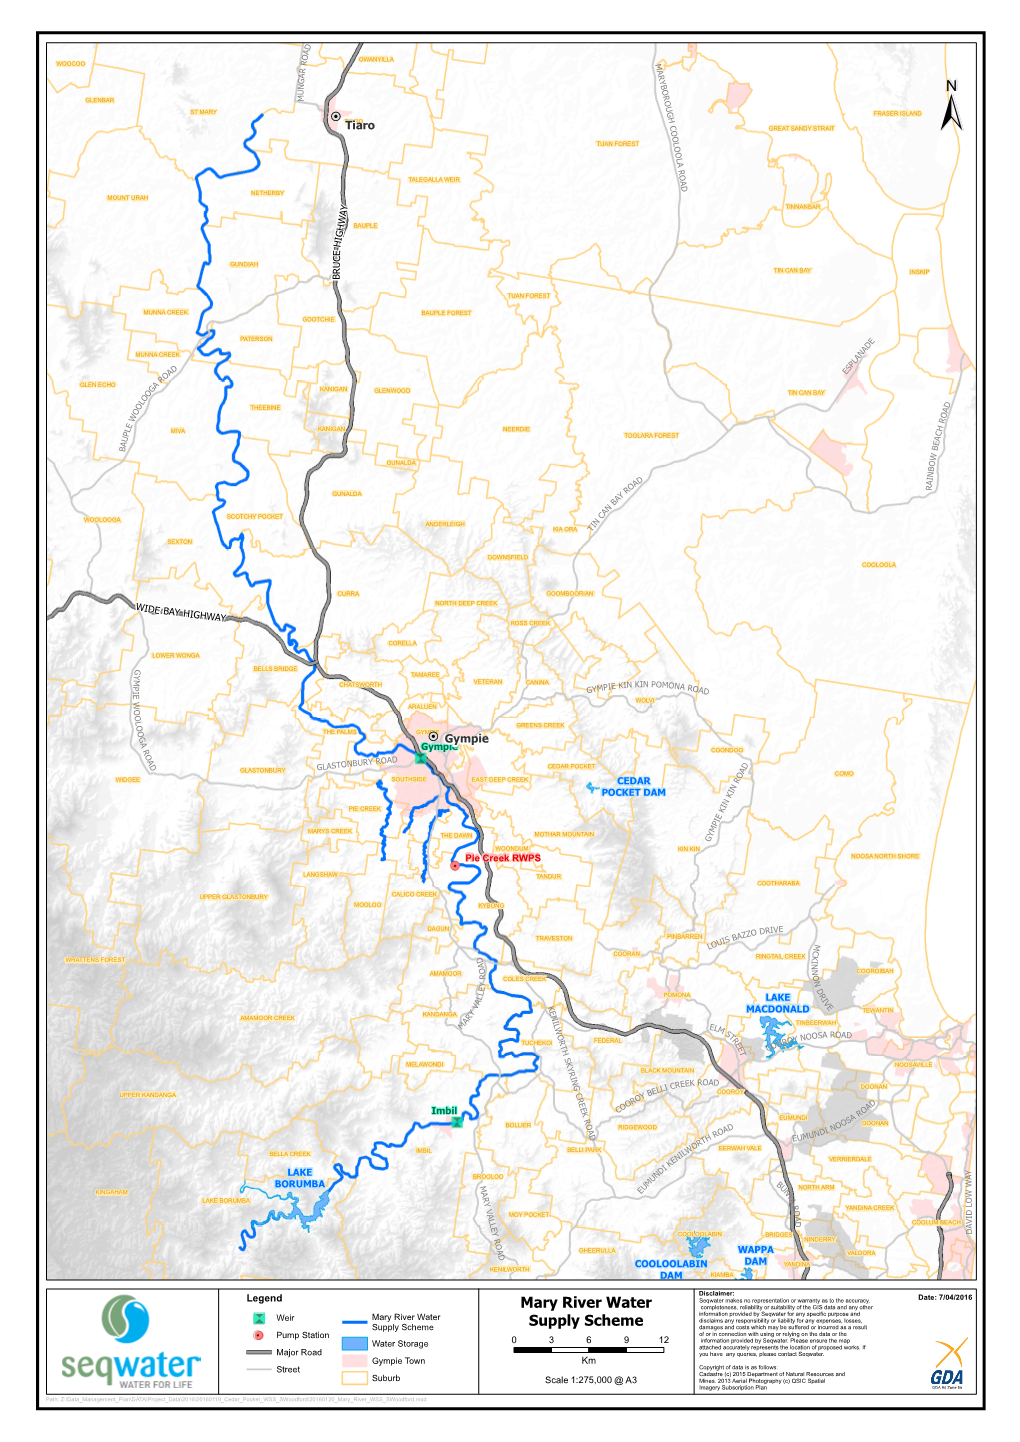 Mary River Water Supply Scheme "\ Weir